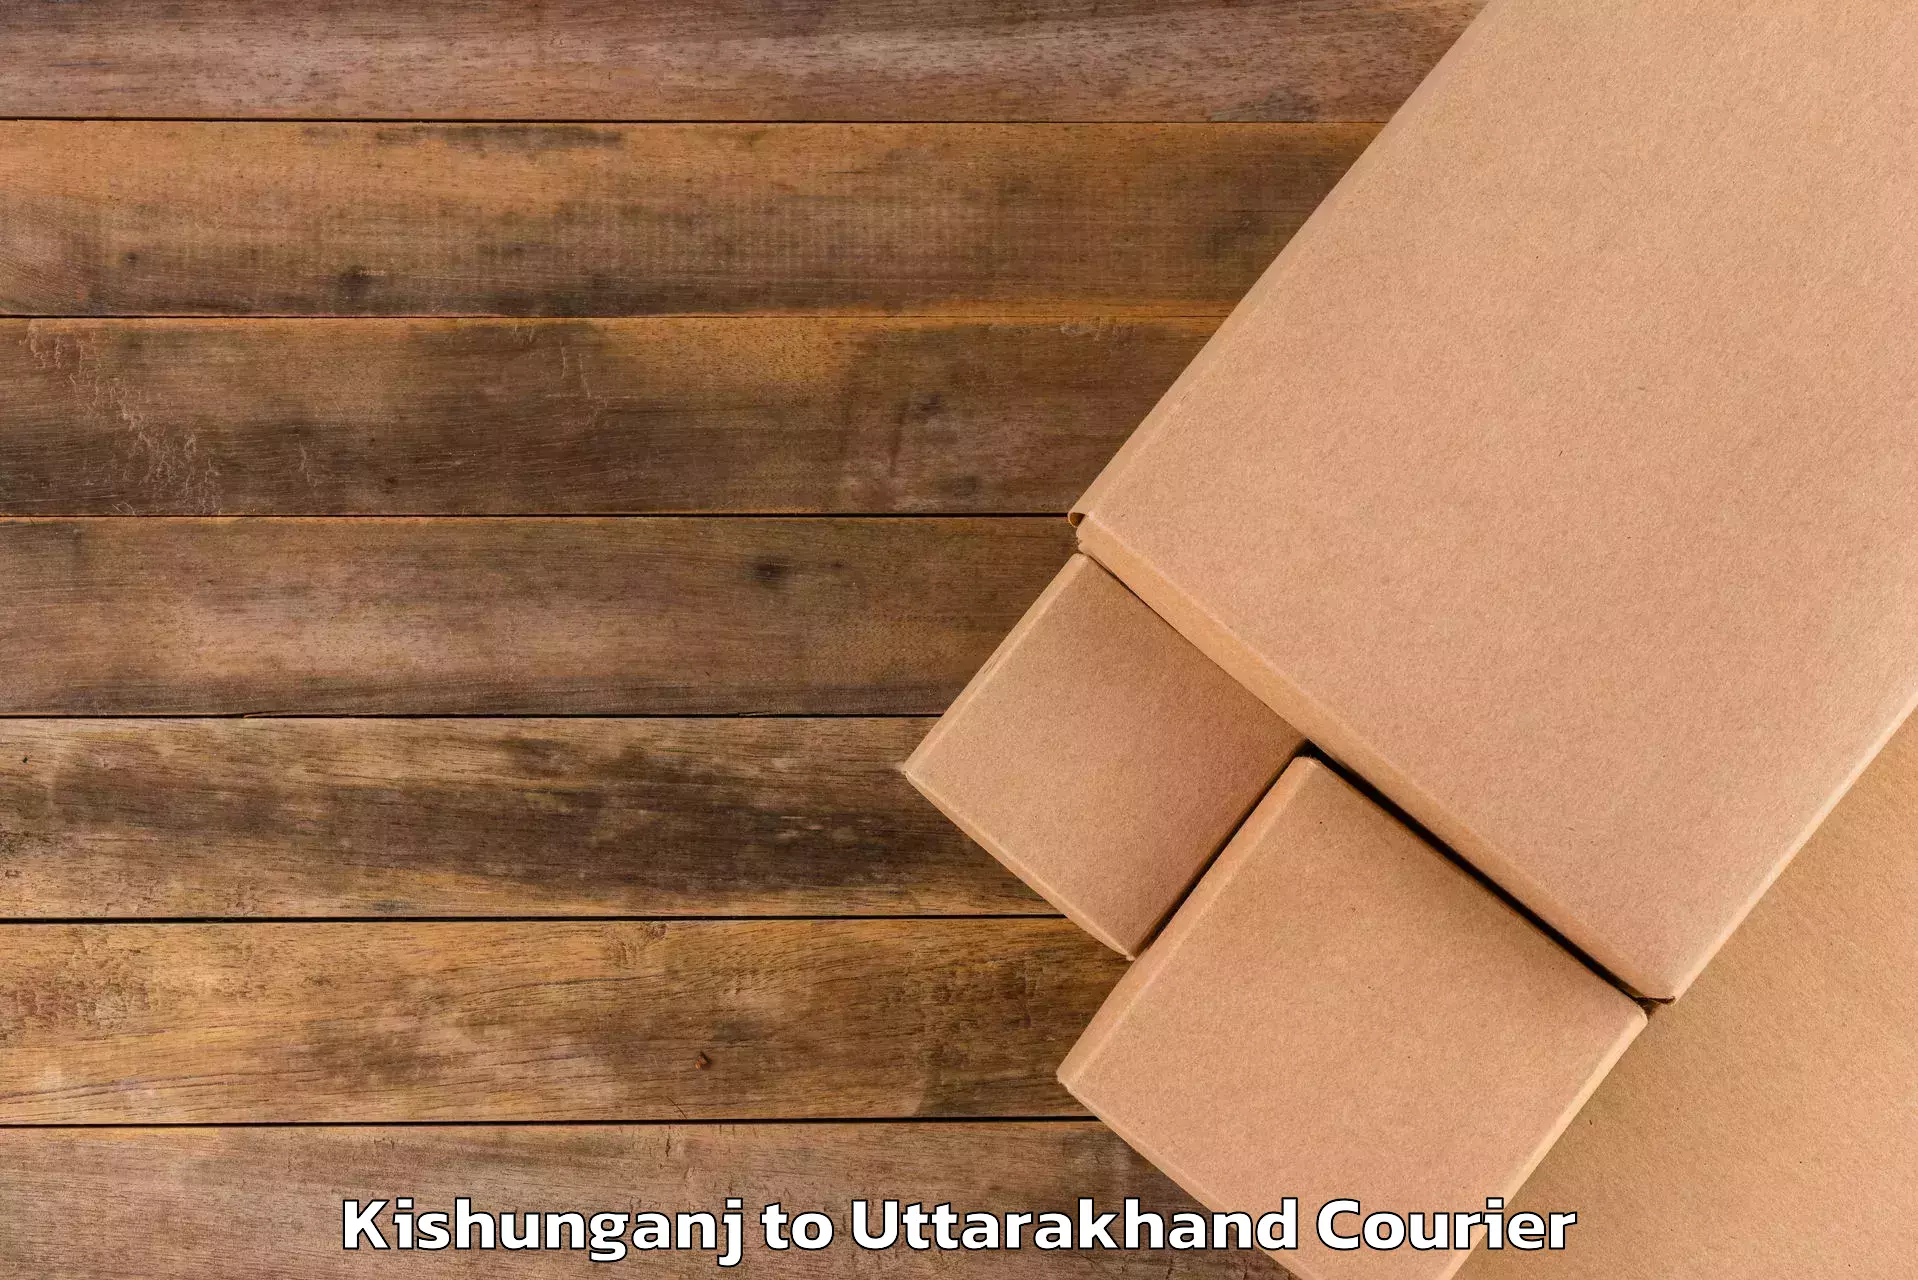 Luggage delivery system Kishunganj to Uttarakhand